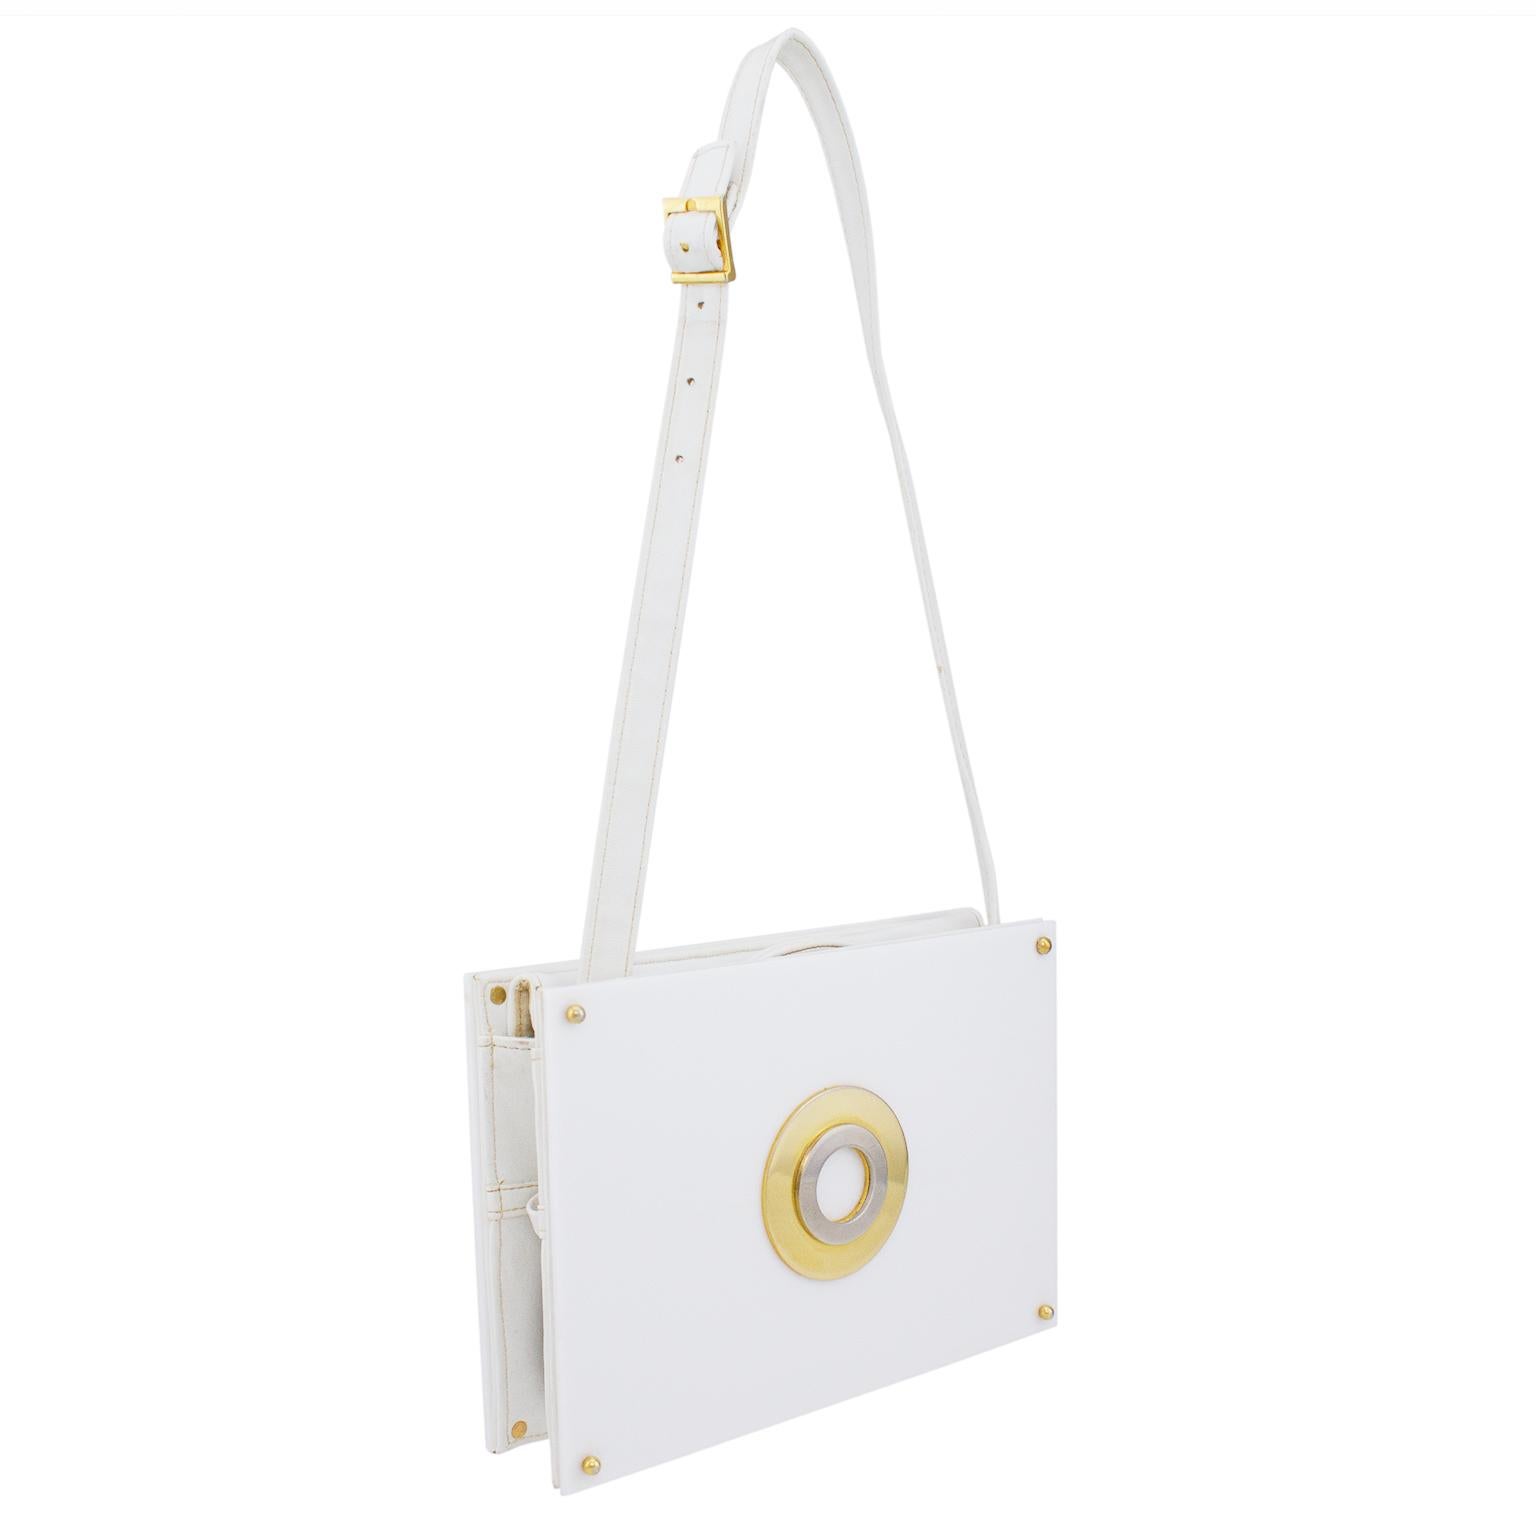 Sehr lustige und ultra modische 1960er Jahre Saks Fifth Avenue Tasche. Weißer Hartplastik mit verstellbarem und abnehmbarem weißem Lederband und Innenausstattung. Kreisförmige gold- und silberfarbene Details auf der Vorderseite und goldene Beschläge